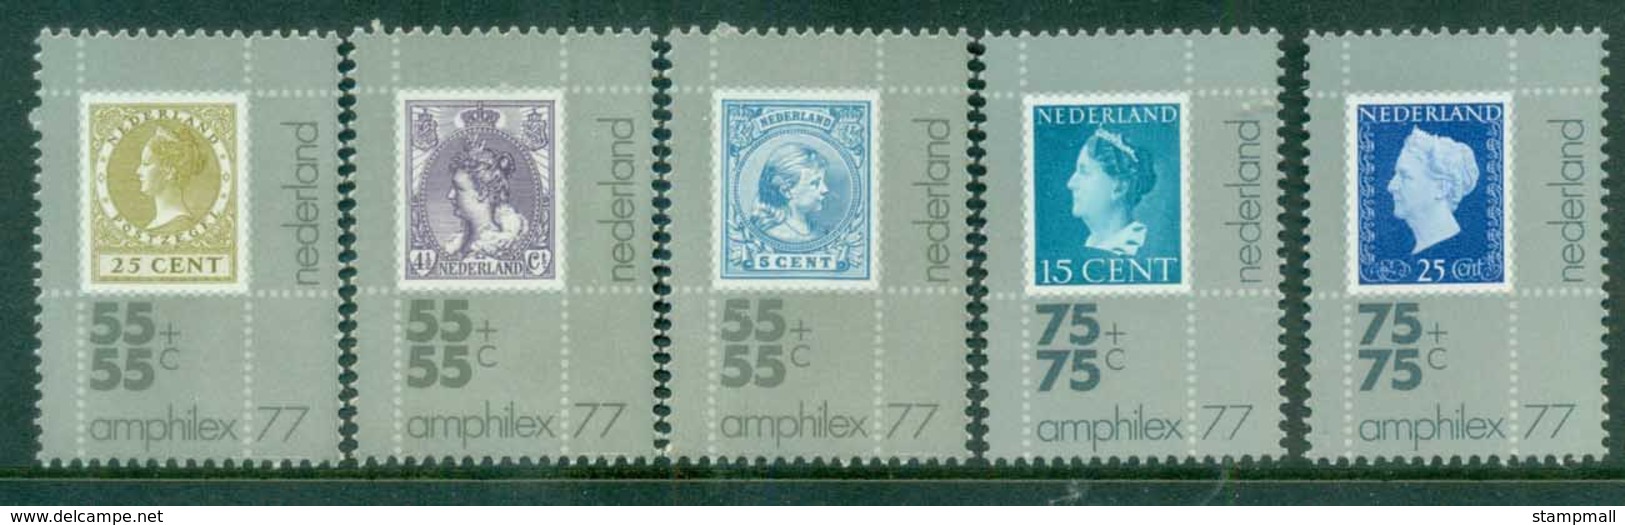 Netherlands 1976 Charity, Amphilex Stamp Ex. MUH Lot76581 - Ohne Zuordnung